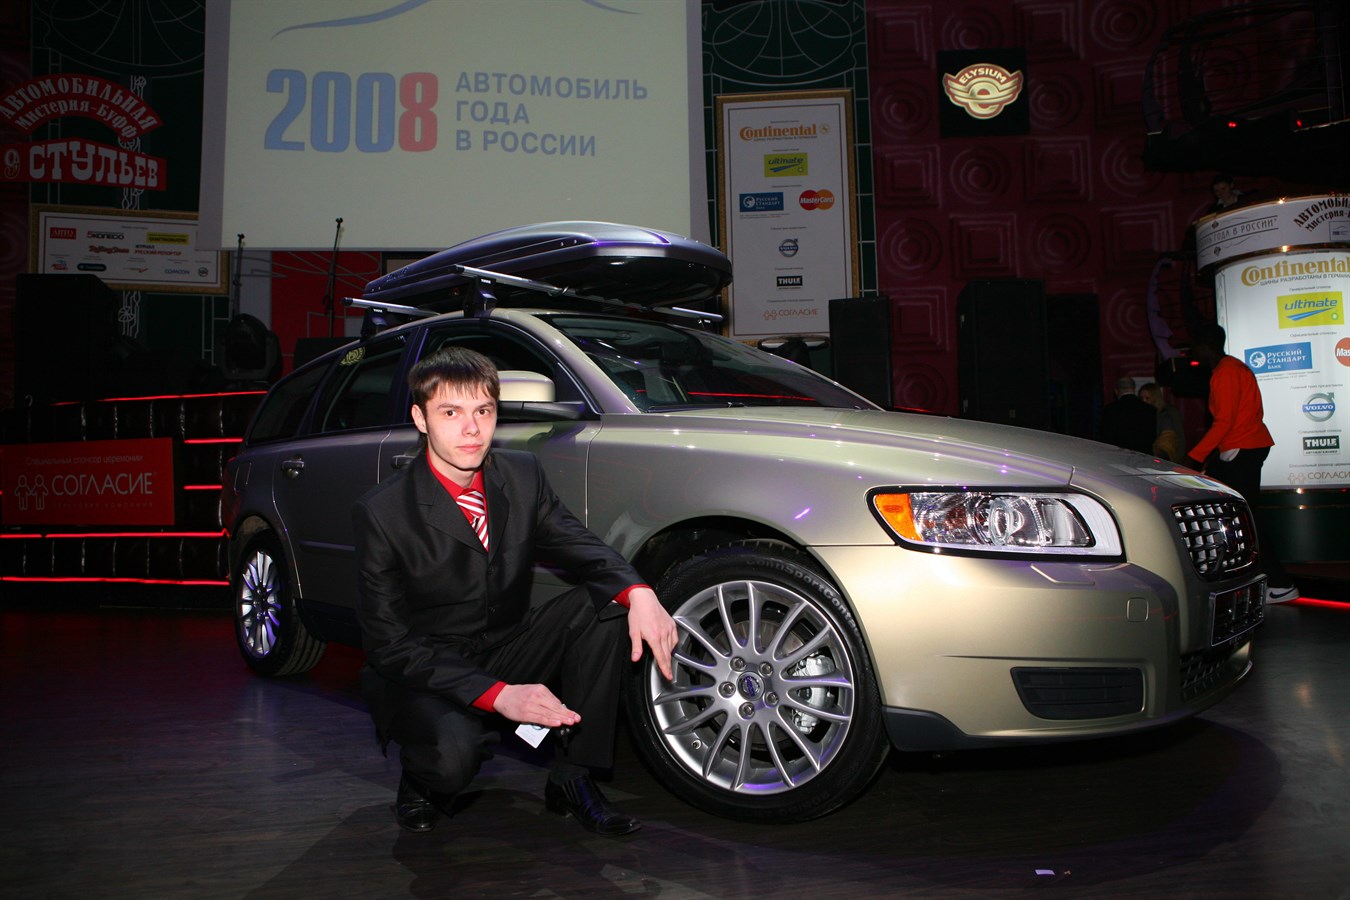 Il diciottenne Alexey Bazlov di Pavlovo, nella regione di Nizhny Novgorod, in Russia, proprietario di una Volvo V50 nuova di zecca